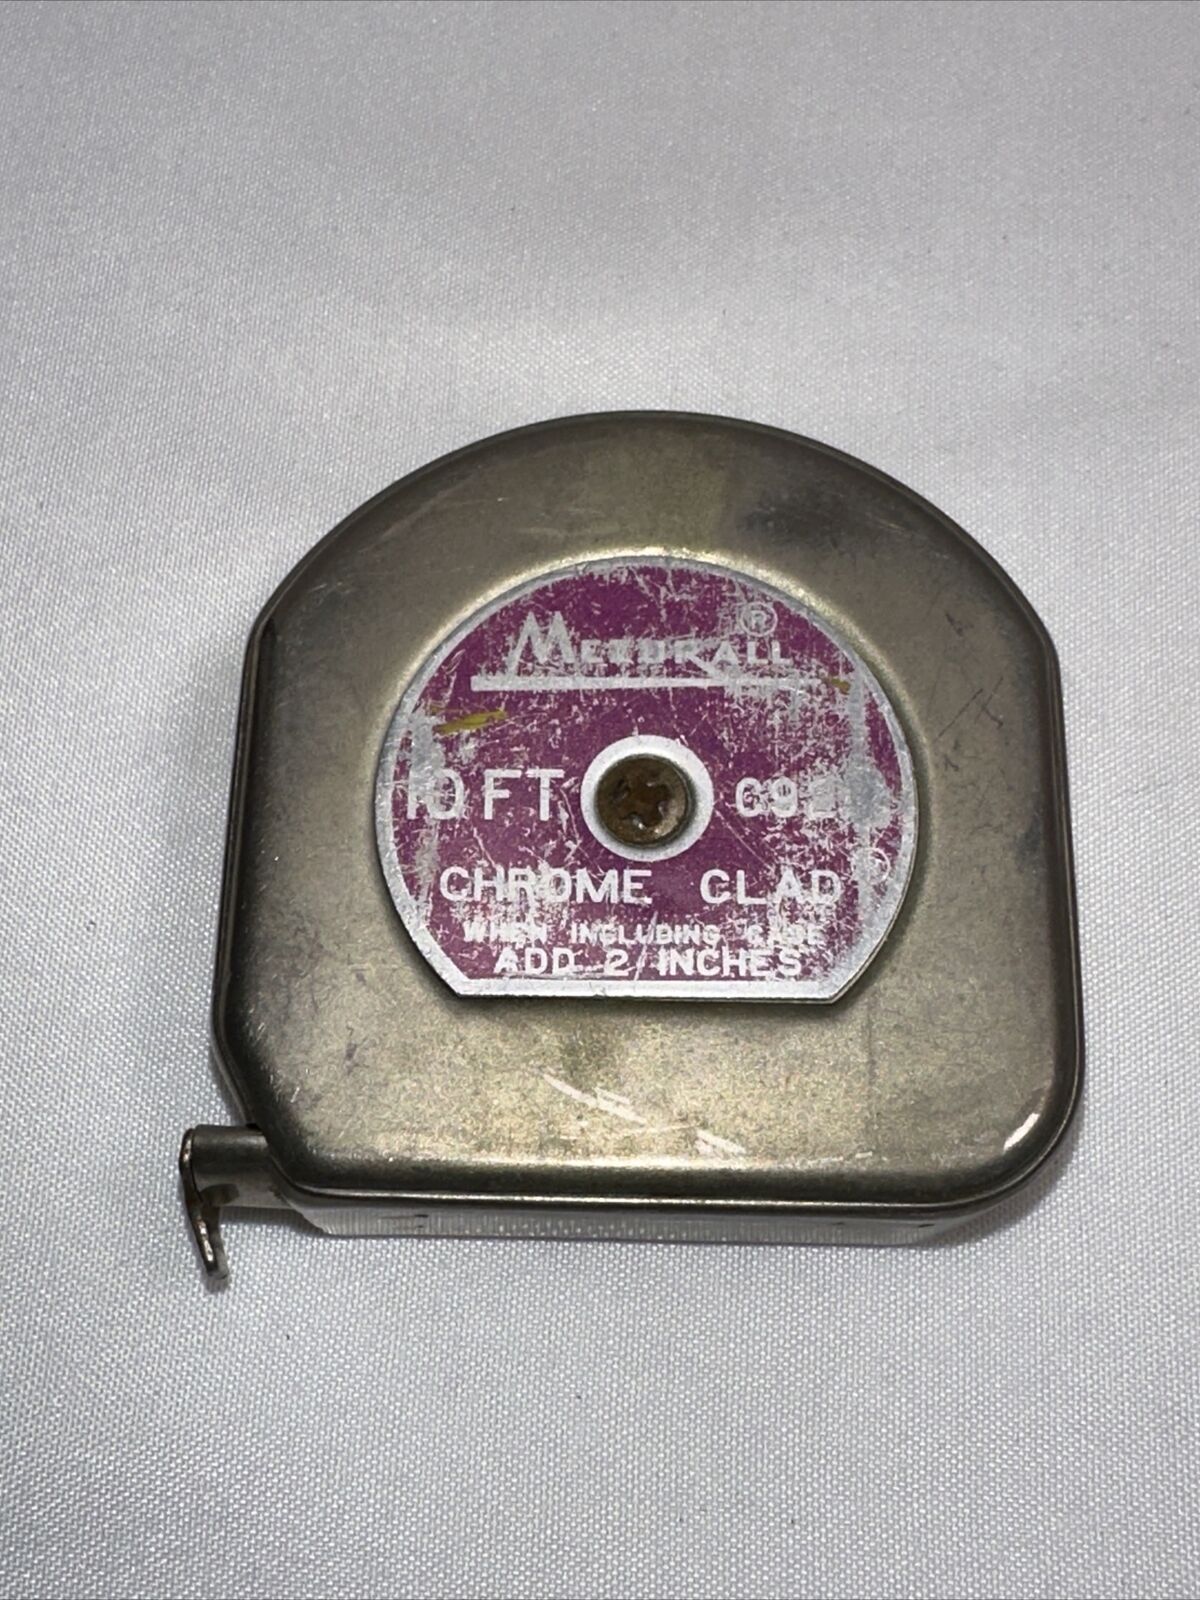 Vintage LUFKIN  Mezurall 10 FT Chrome Clad  C9210 Pocket Tape Measure  USA made